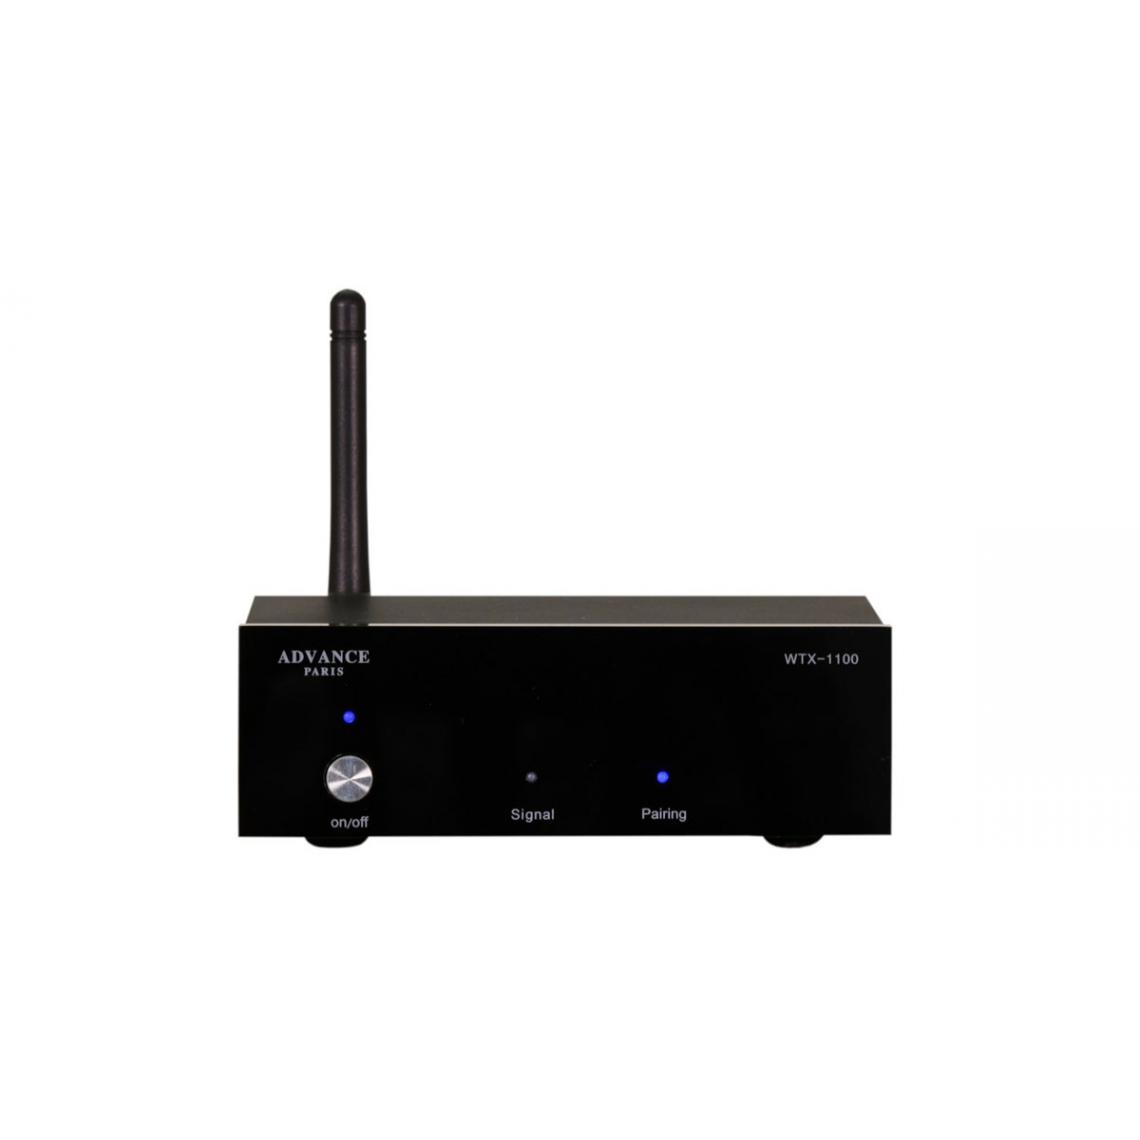 Advance - Advance Paris WTX-1100 Noir - Récepteur Bluetooth - Passerelle Multimédia